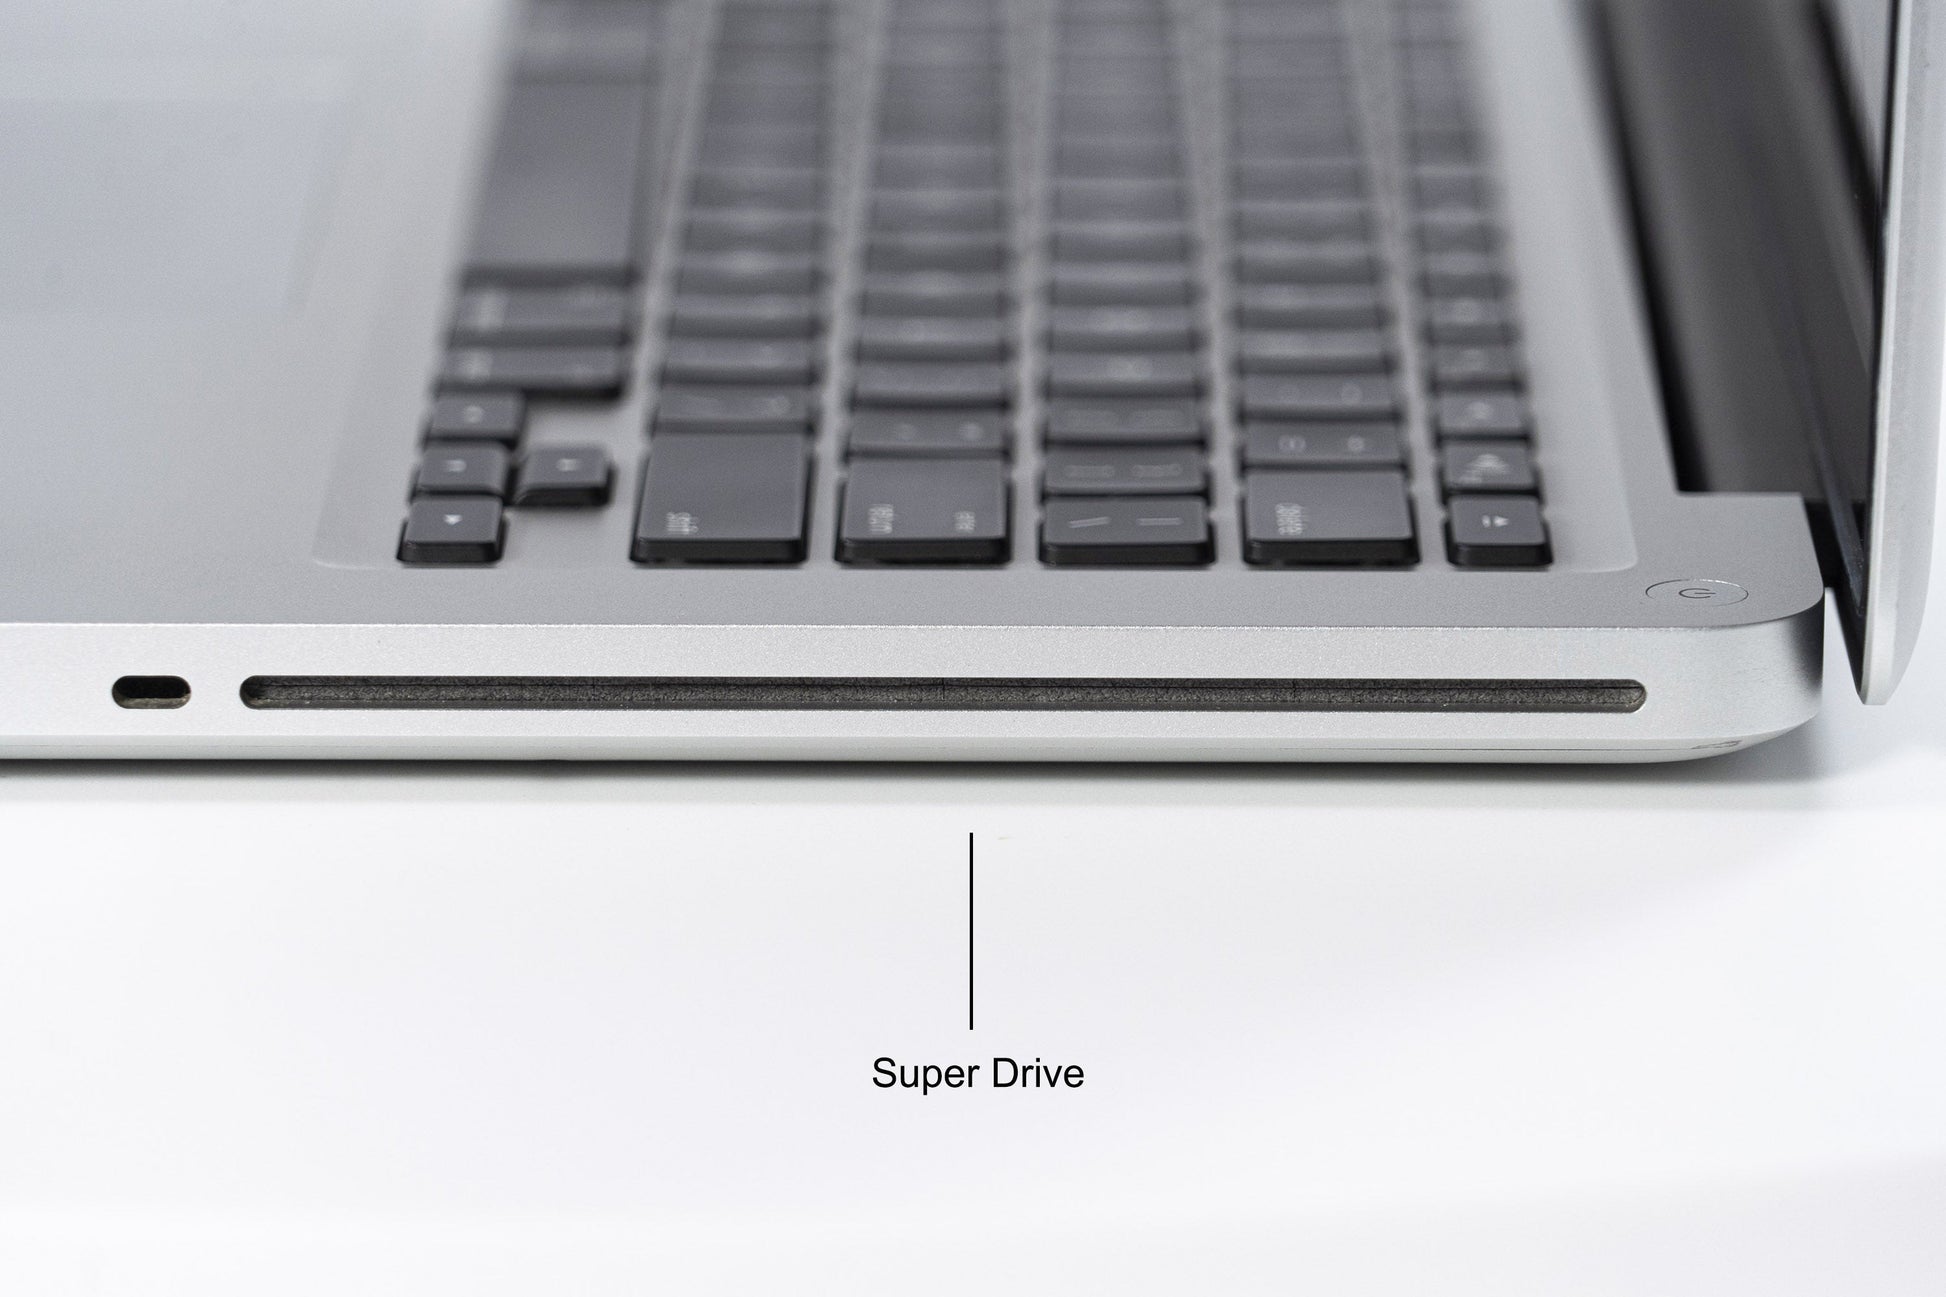 Apple MacBook Pro (13-inch Mid 2012) 2.5 GHz i5-3210M 4GB 500GB HDD (Silver)